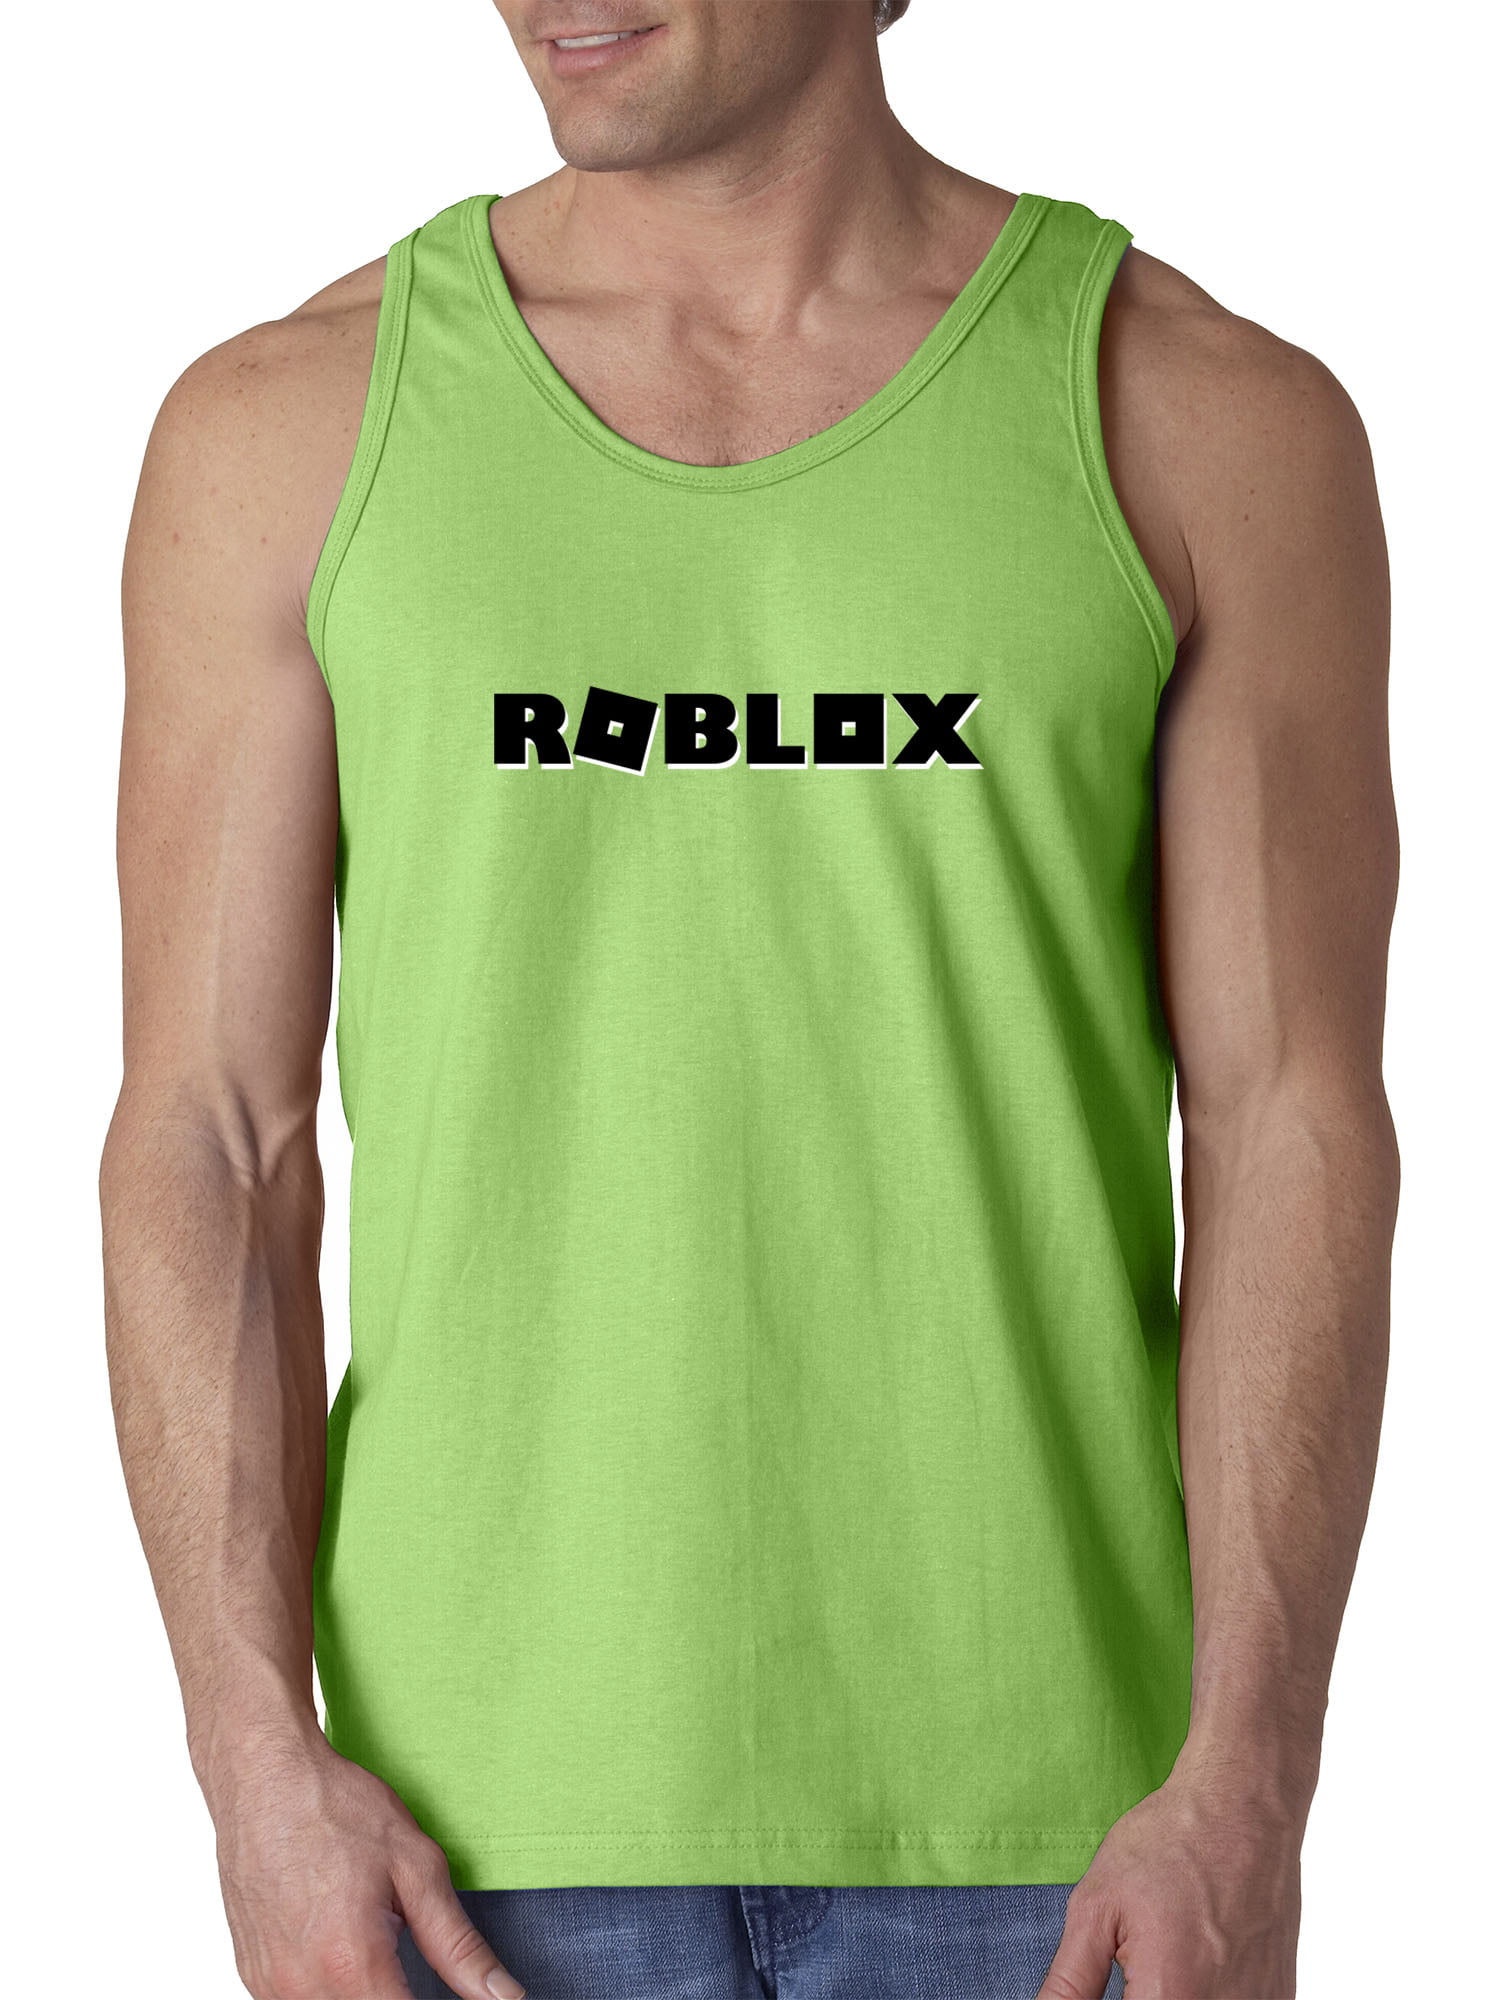 Roblox Camping Logos